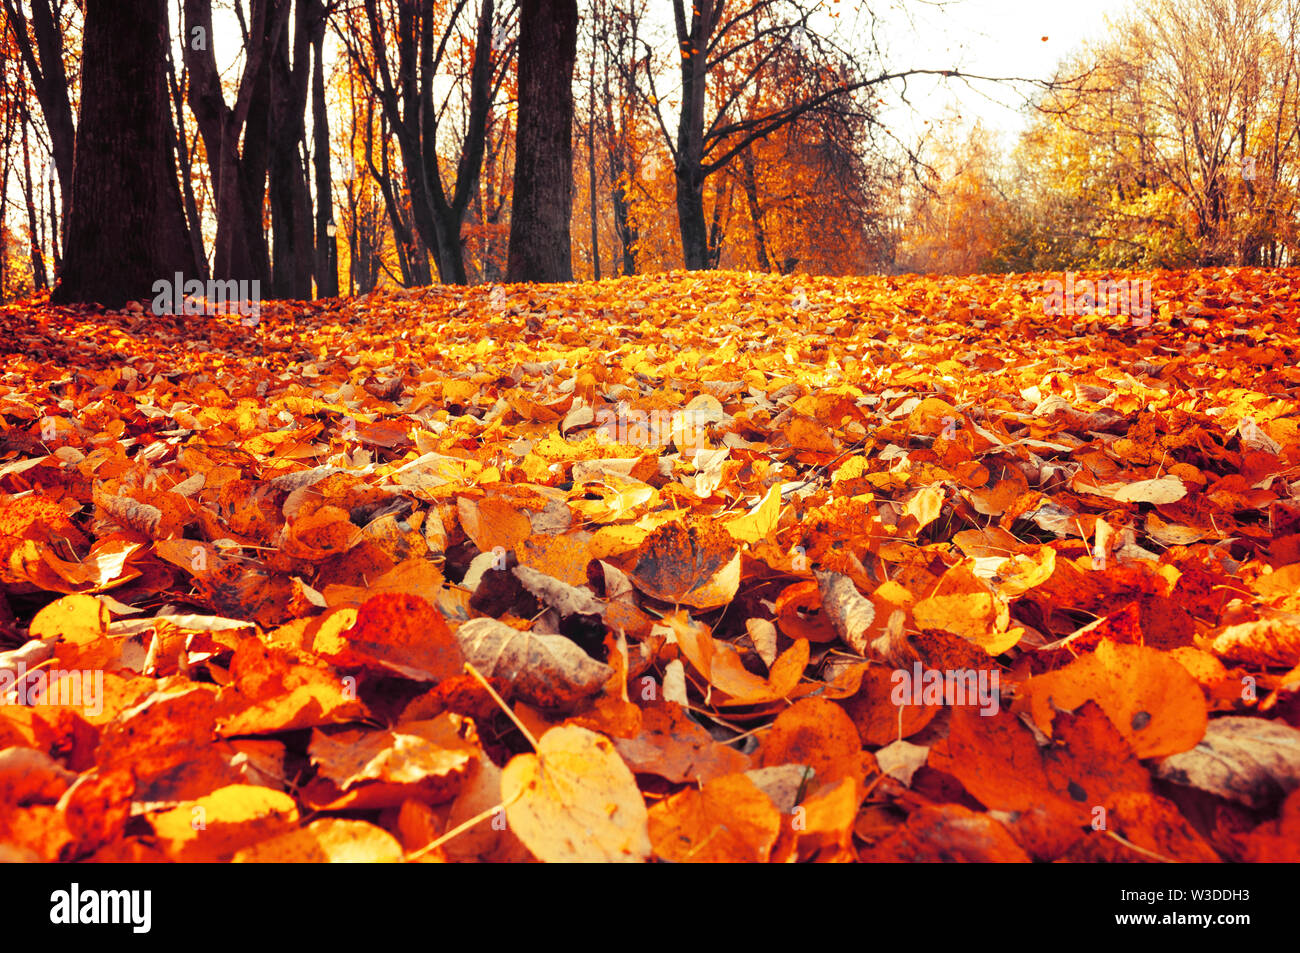 Herbst Oktober Landschaft - park Bäume und gefallenen Blätter im Herbst im City Park im Herbst Tag. Selektiver Fokus im Vordergrund. Diffusion Filter angewendet Stockfoto